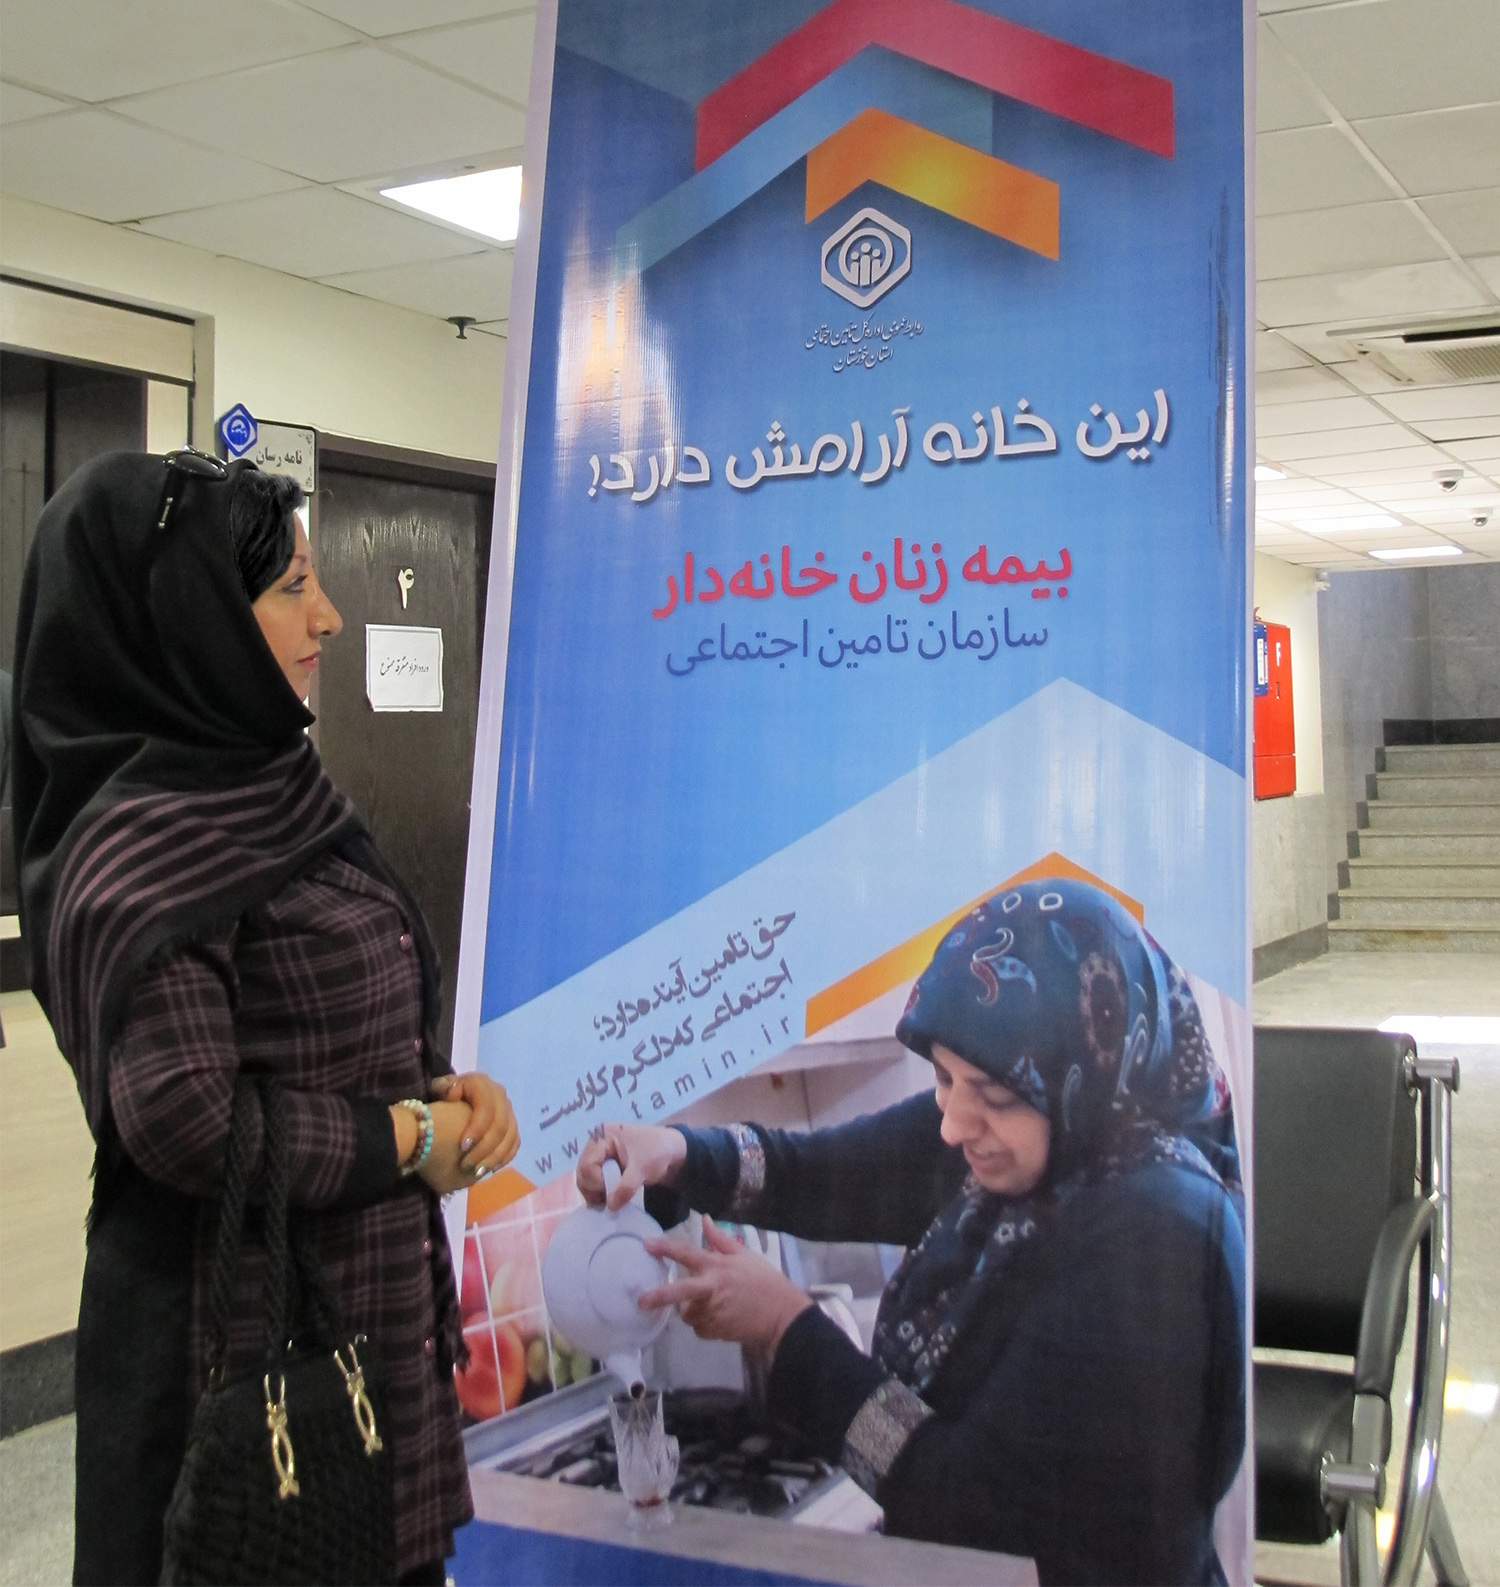 ١١٠ هزار نفر از زنان استان خوزستان تحت پوشش سازمان تامین اجتماعی هستند